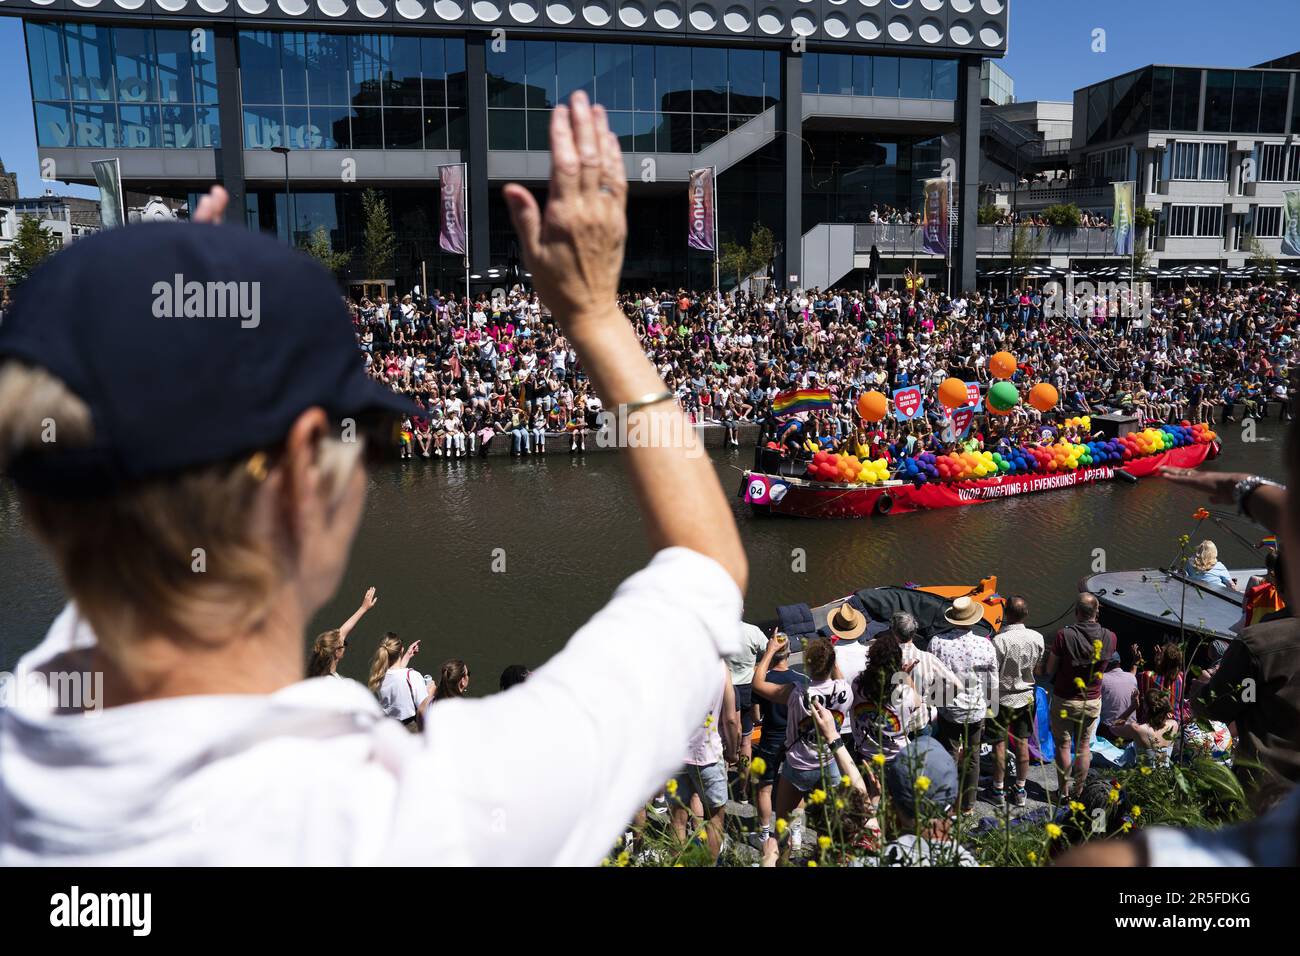 UTRECHT - Teilnehmer an der Utrecht Pride Boat Parade winken den Zuschauern zu. Die Organisation der jährlichen Veranstaltung hat das Hauptziel, die Sichtbarkeit von LGBTIQ+-Organisationen zu erhöhen. ANP JEROEN JUMELET niederlande raus - belgien raus Stockfoto